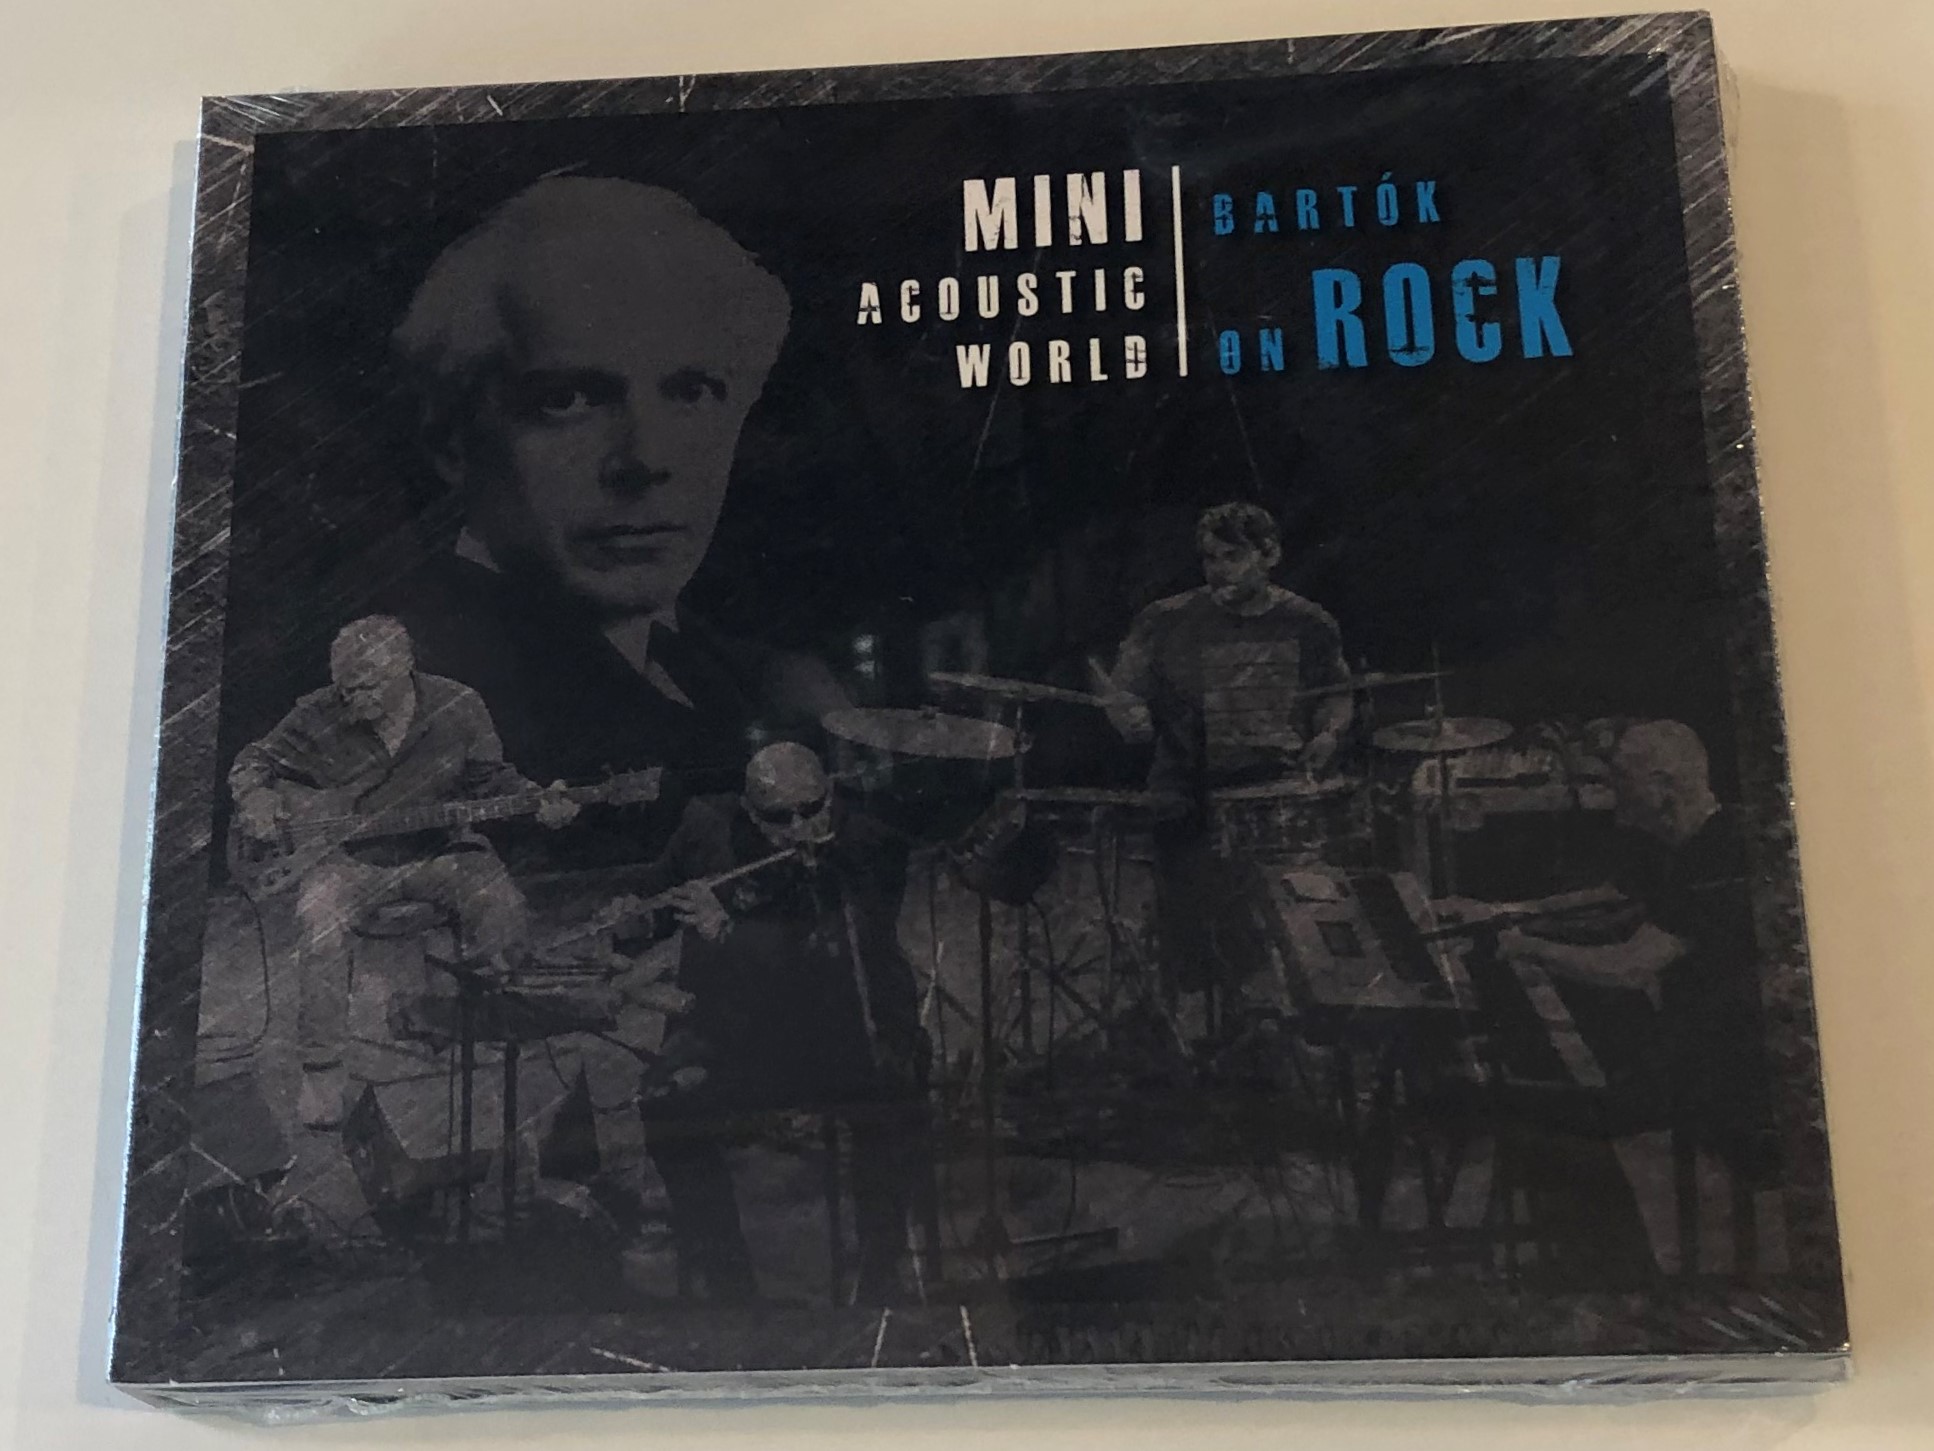 mini-acoustic-world-bart-k-on-rock-grundrecords-audio-cd-2017-5999887248399-1-.jpg